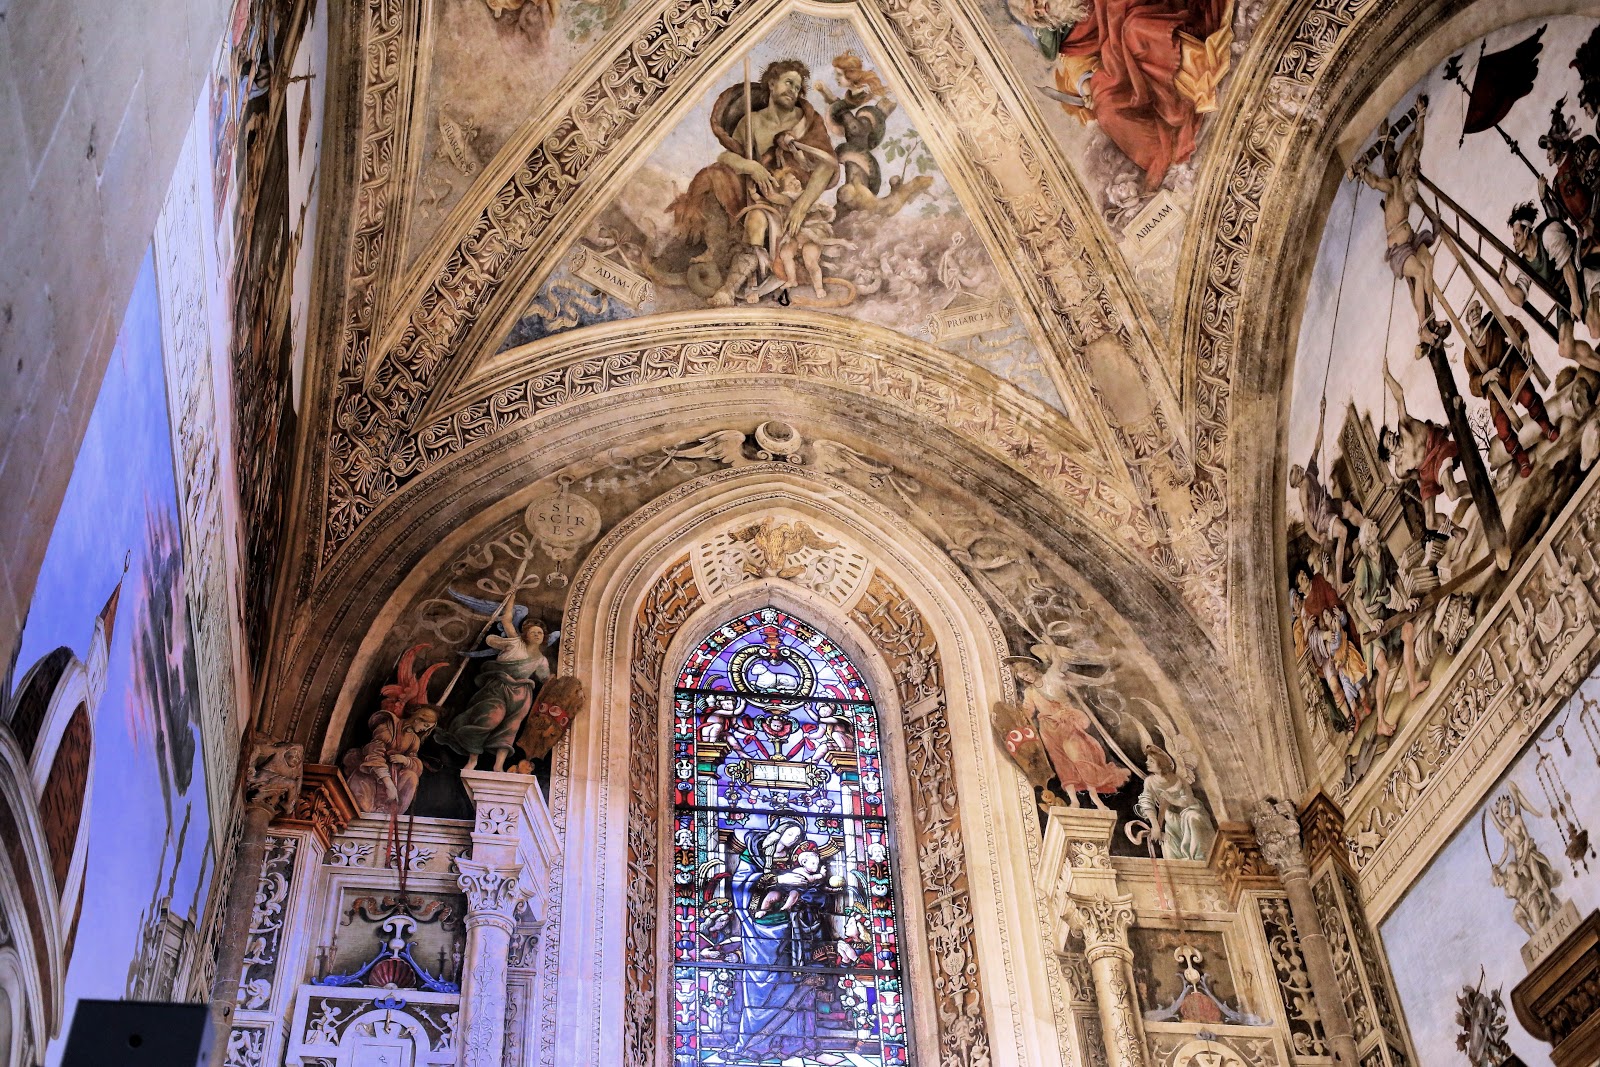 Filippino+Lippi-1457-1504 (27).jpg